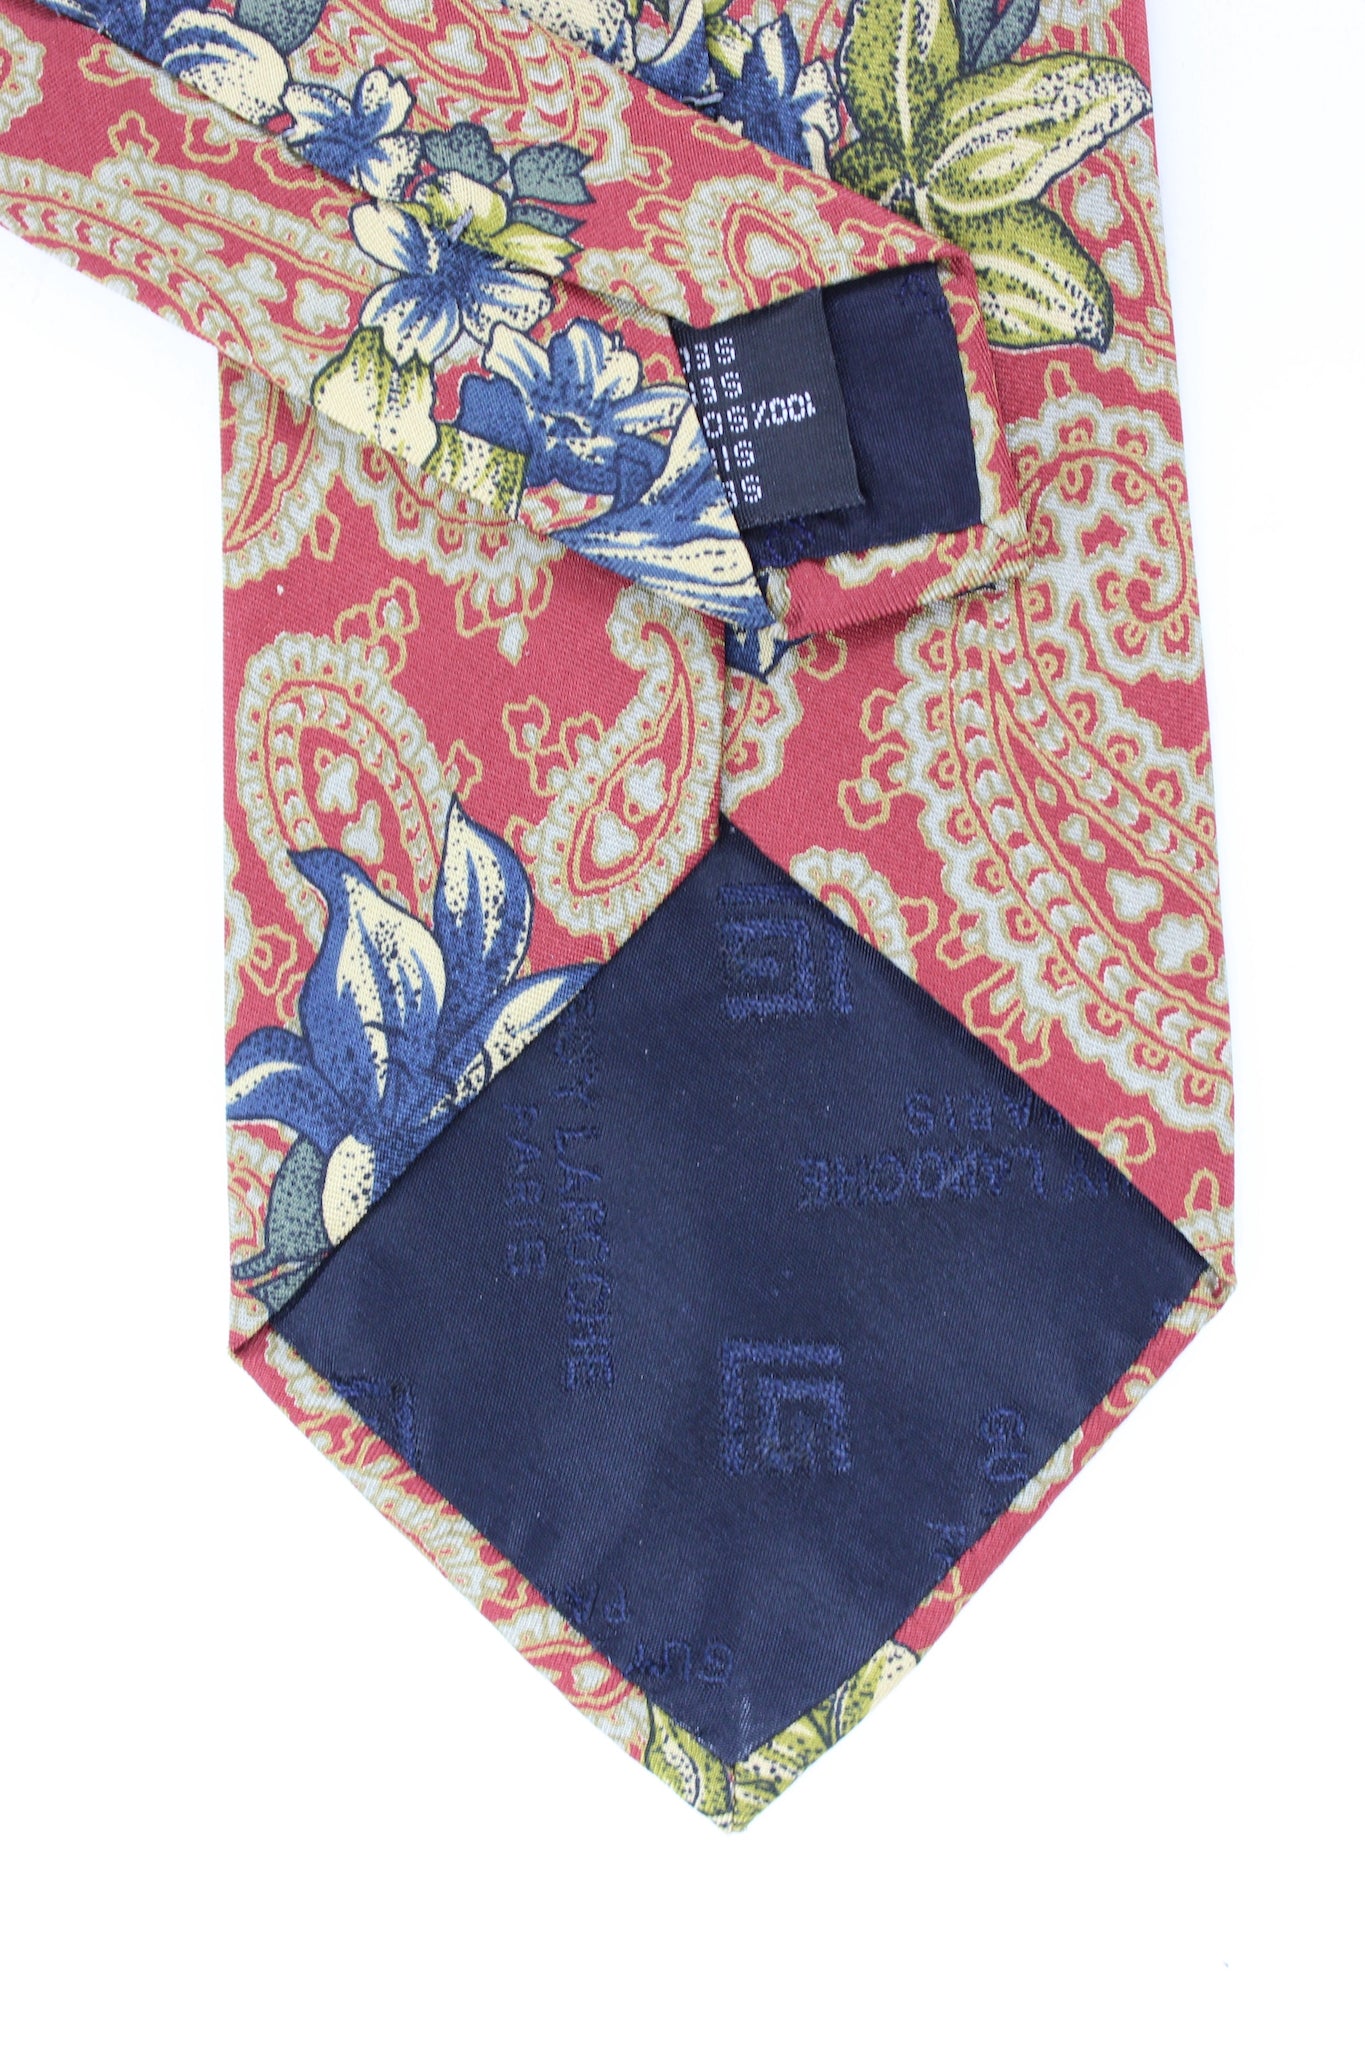 Guy Laroche Red Beige Silk Vintage Floral Tie